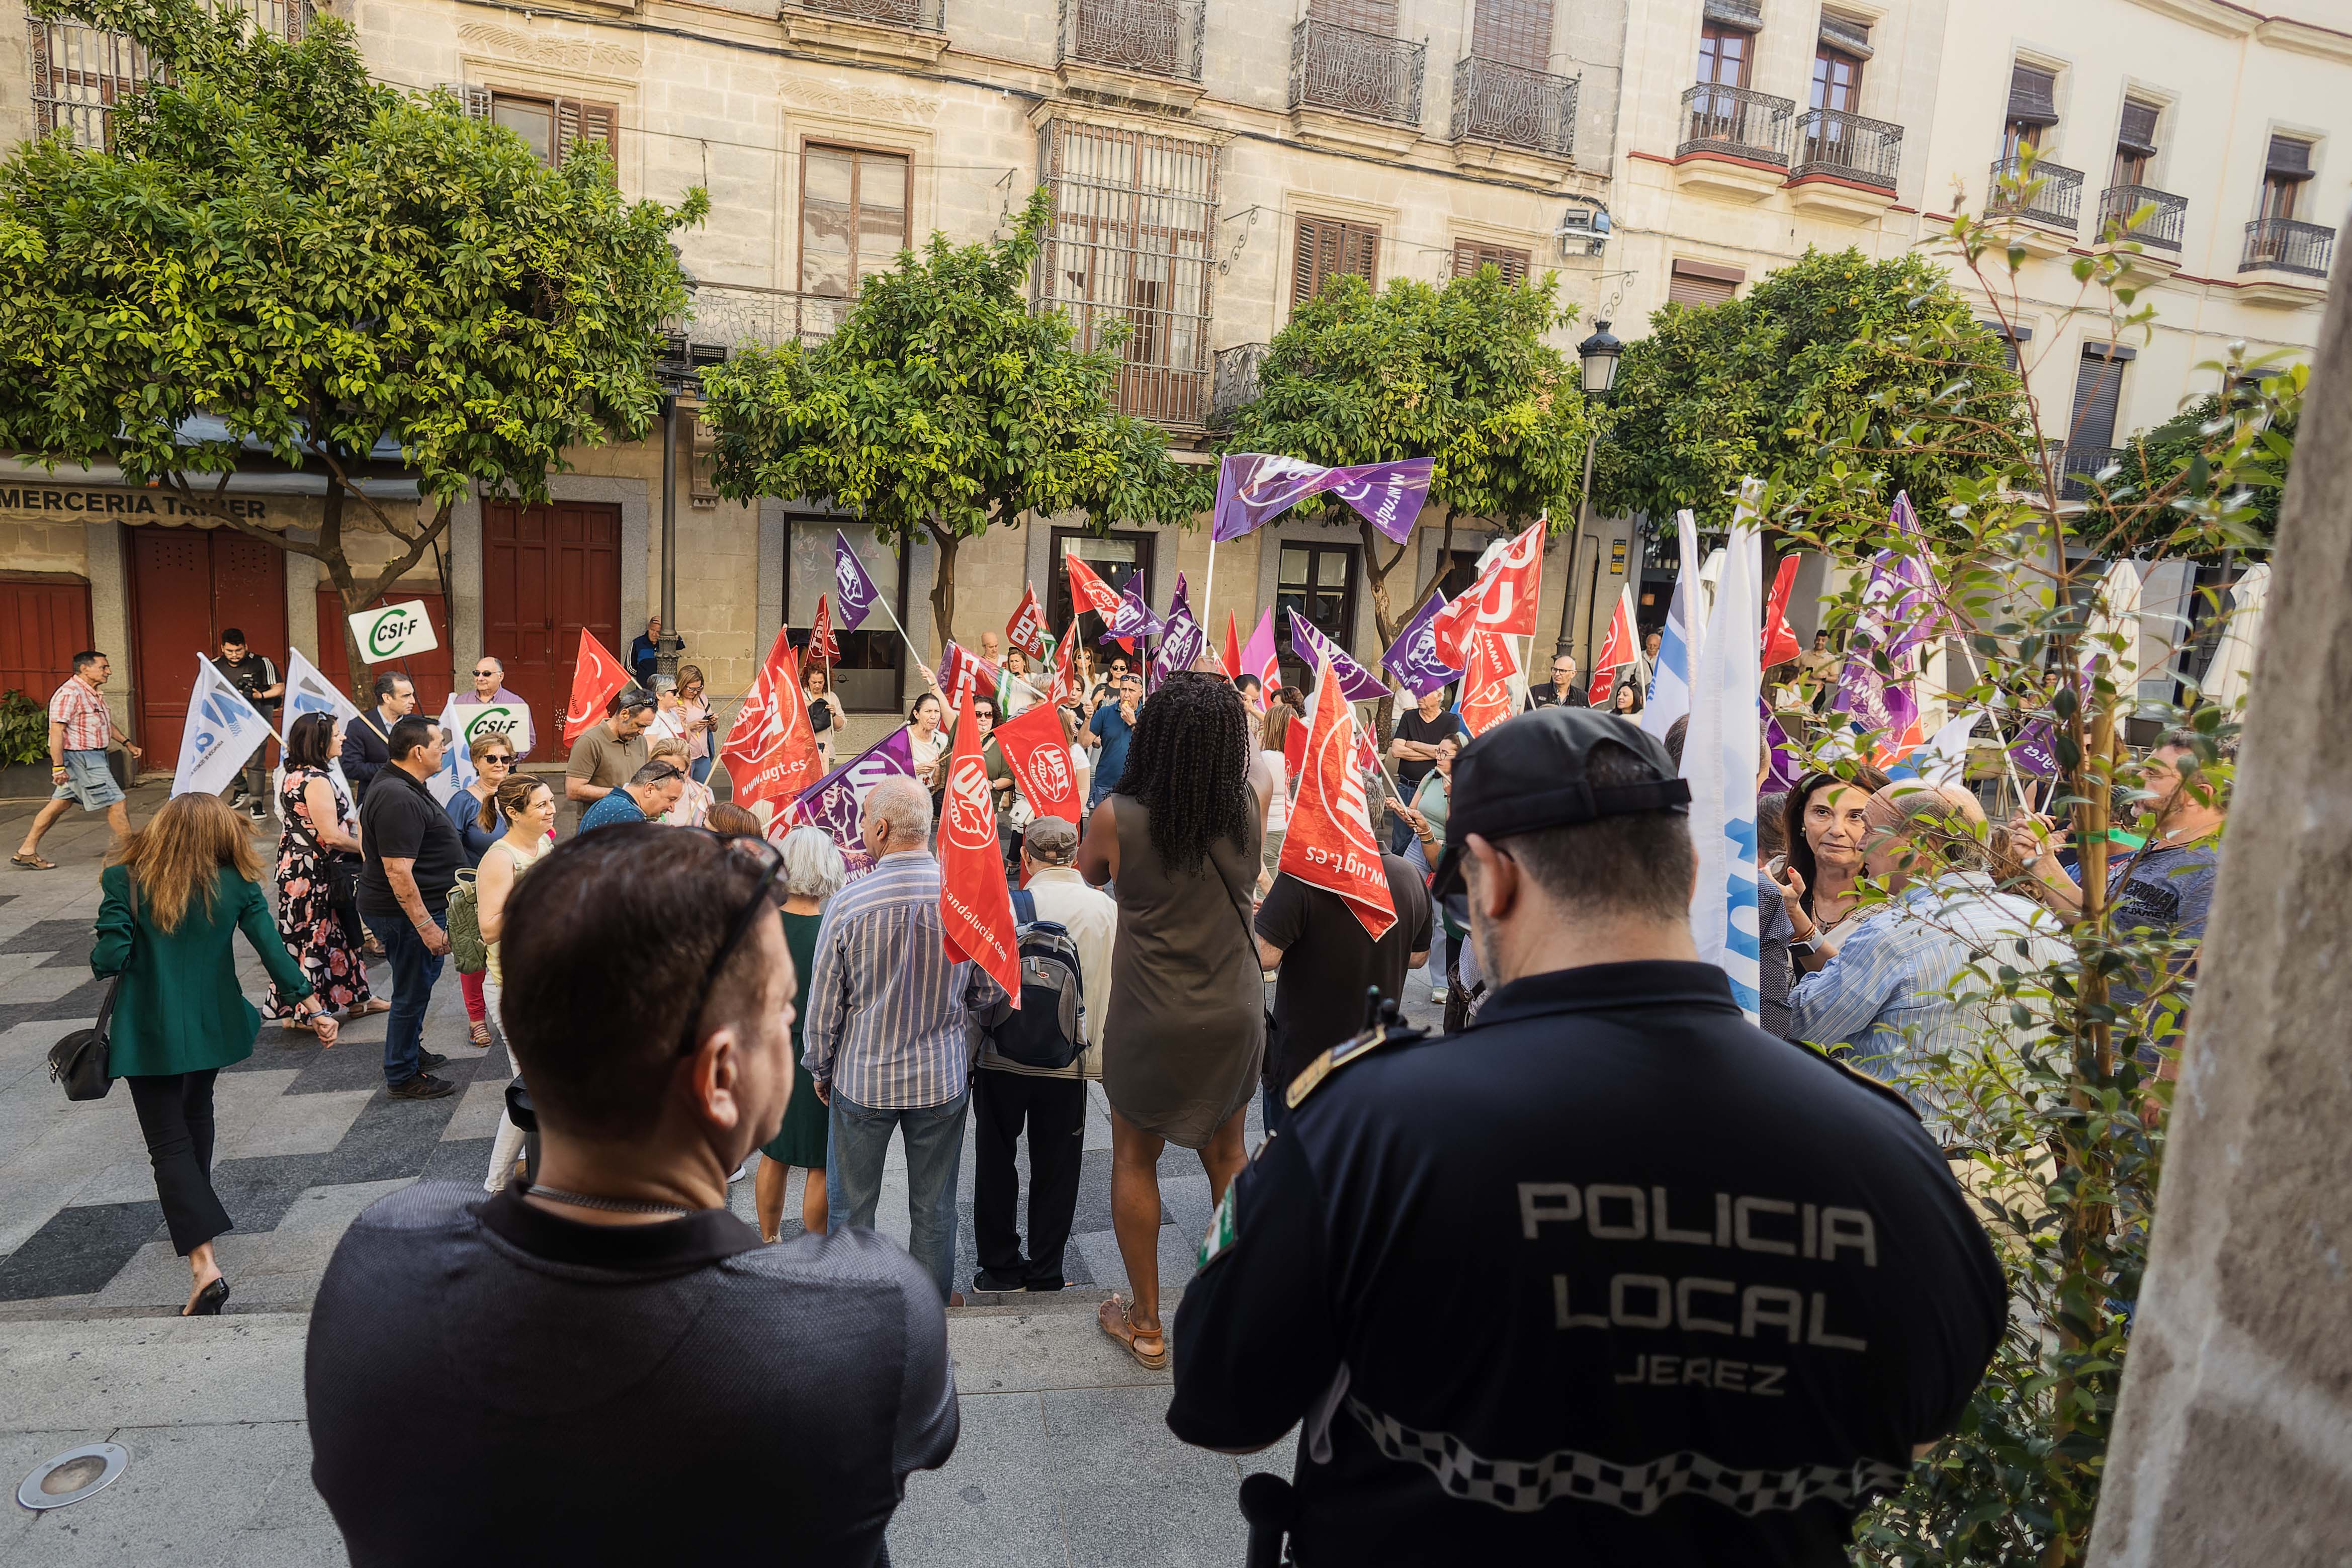 Álvarez da "24 horas" a Pelayo para que diga “si ha prometido", subir el sueldo a trabajadores municipales de Jerez. Protesta laboral a las puertas del Ayuntamiento.